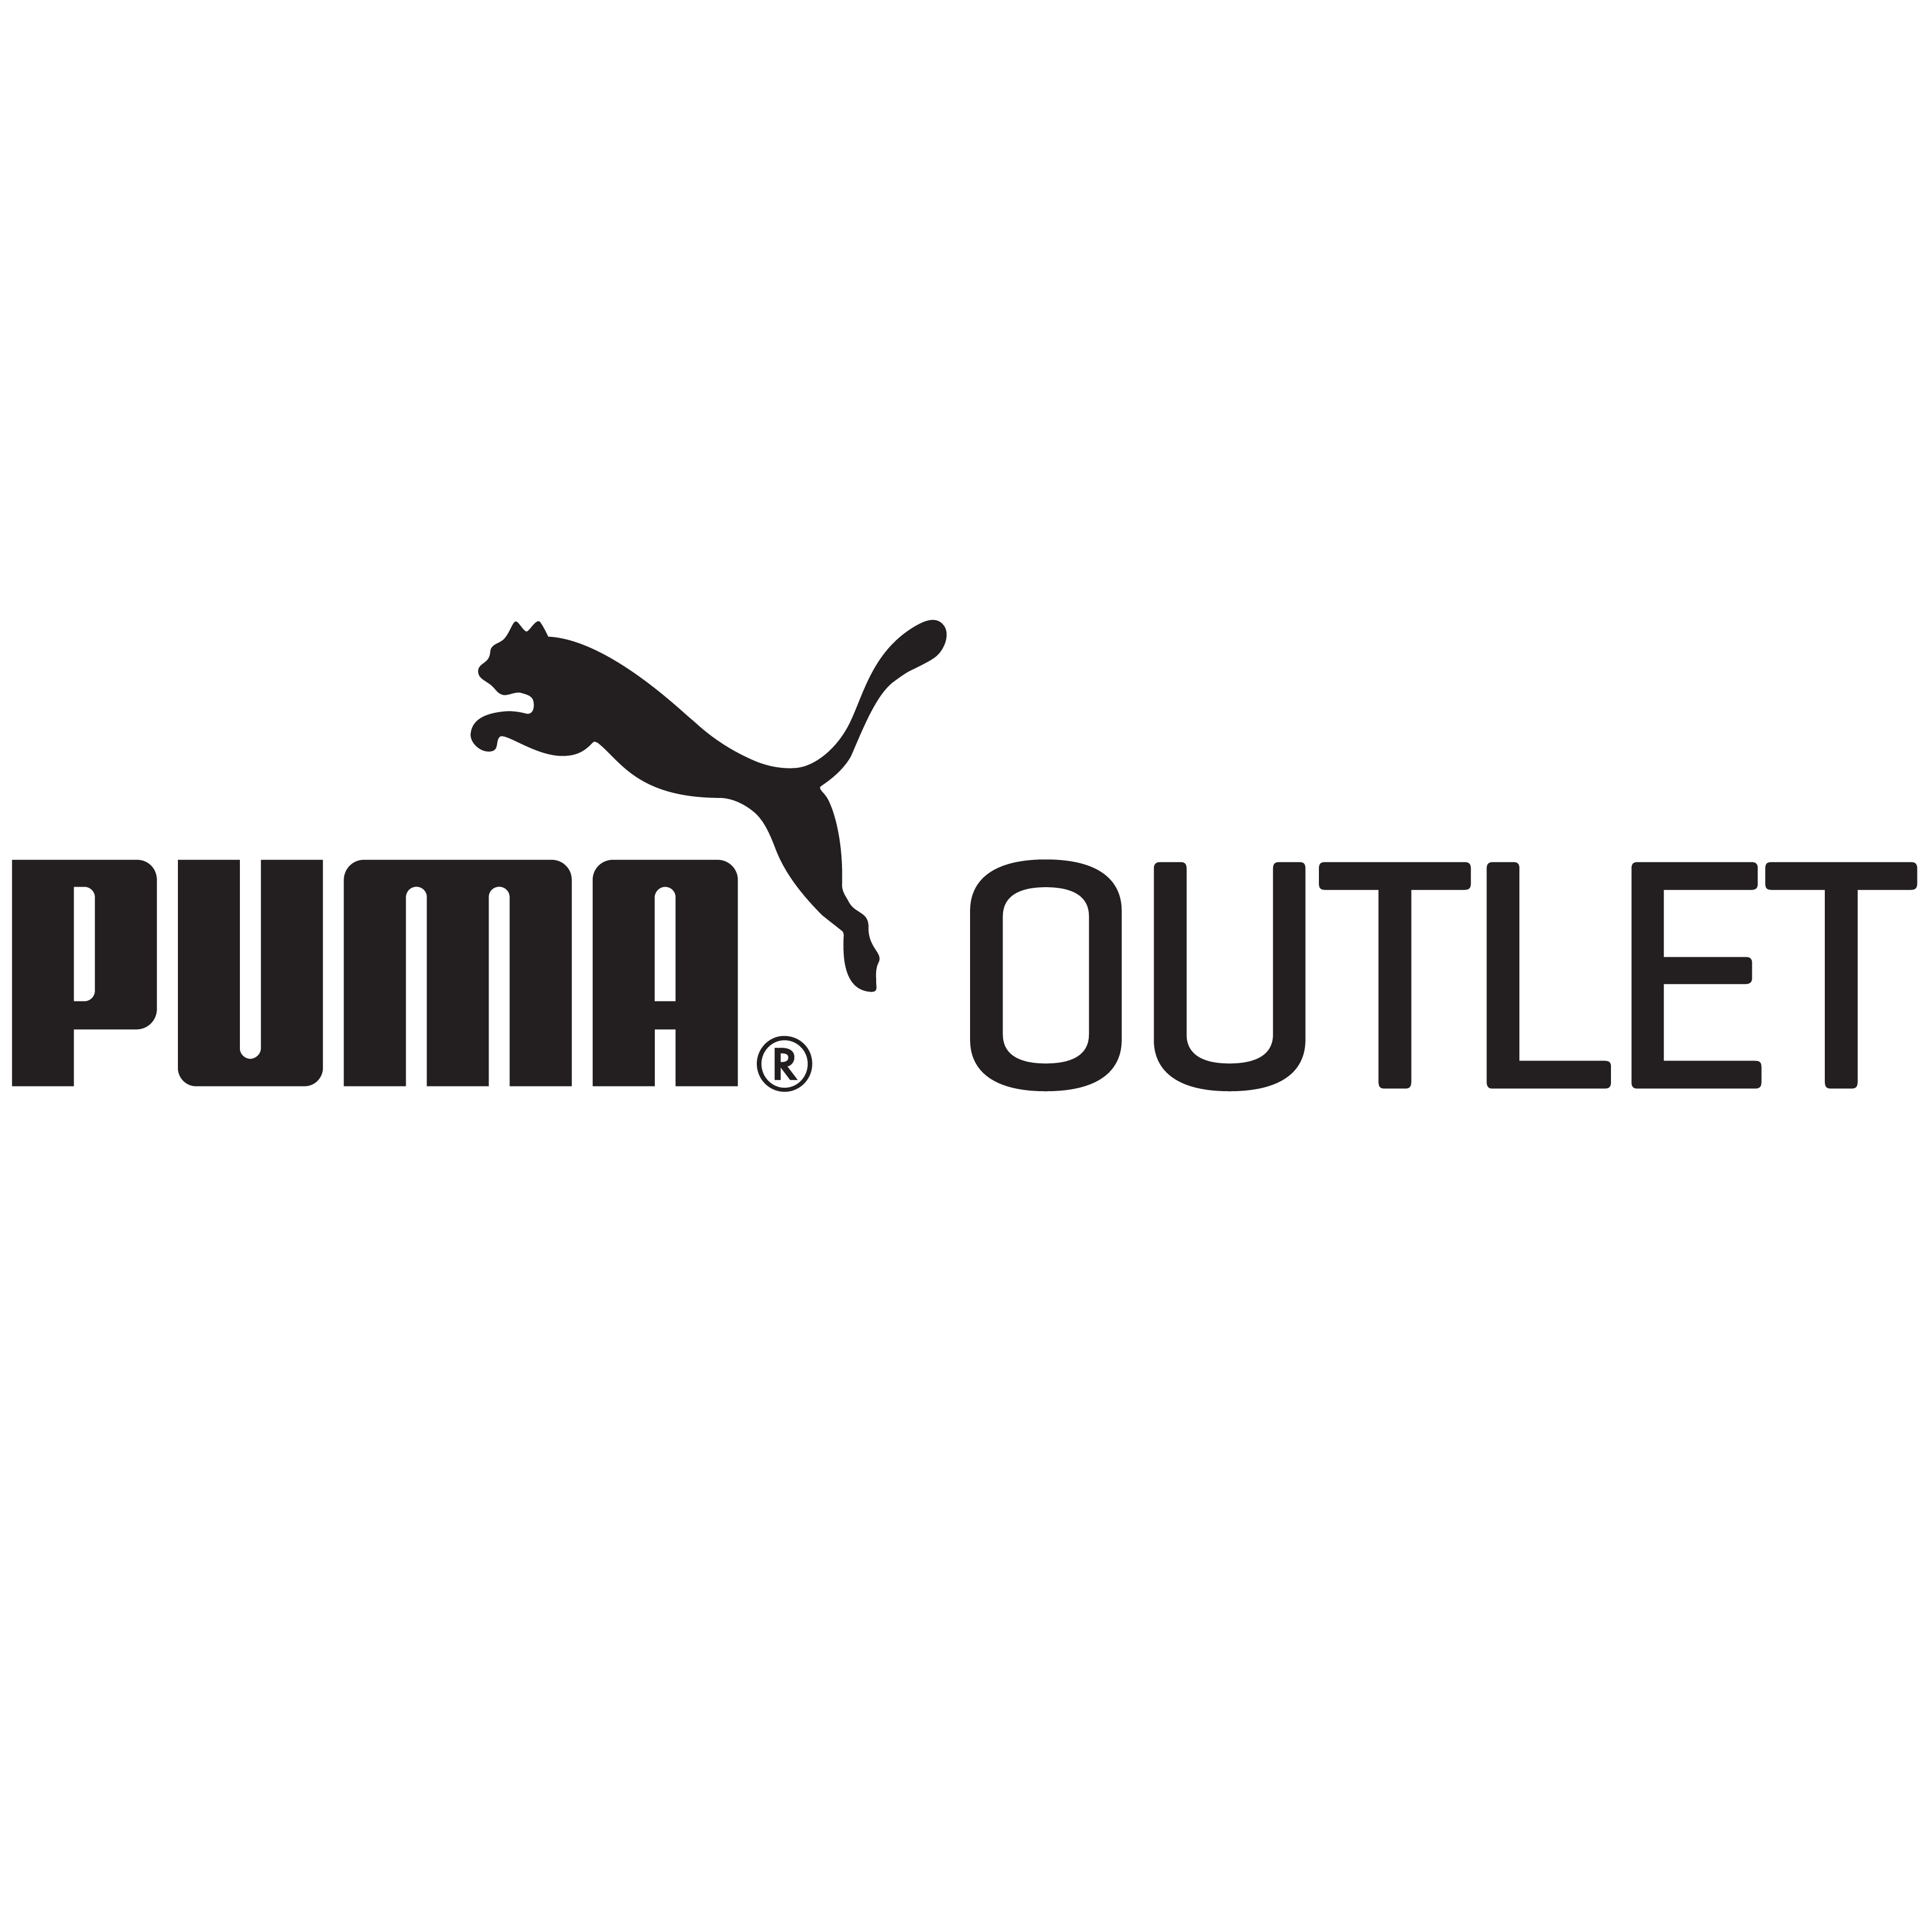 Puma outlet. Надпись Puma на белом фоне для фотошопа. Puma псина. 1999 Первый концептуальный магазин Puma. Www.Puma.com.